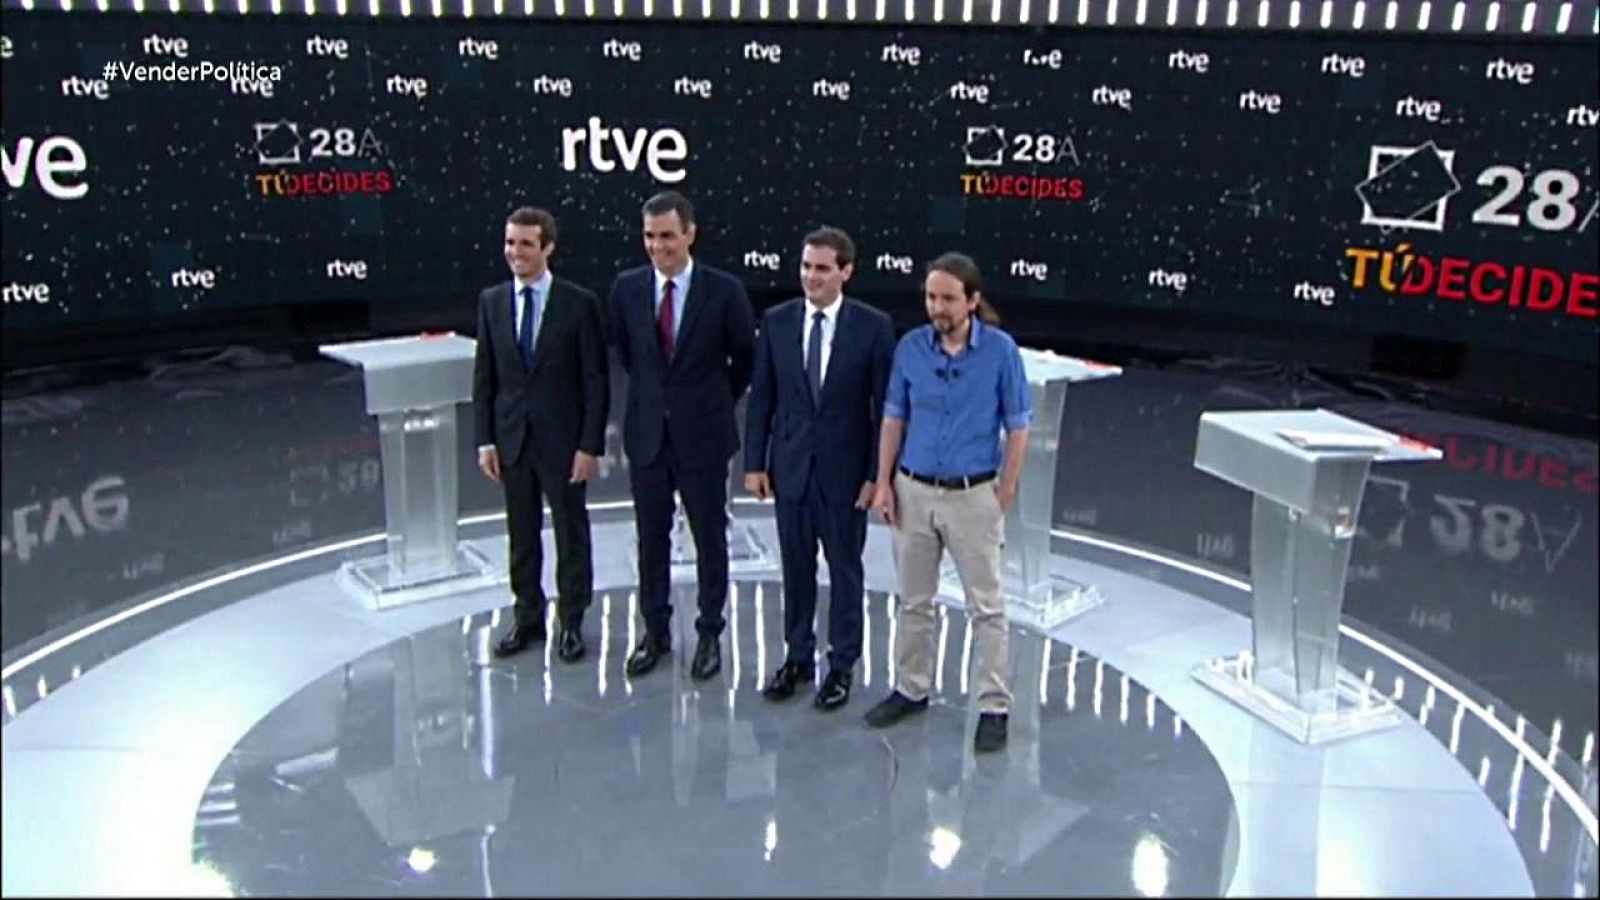 Informe Semanal - Cómo vender a un político - RTVE.es